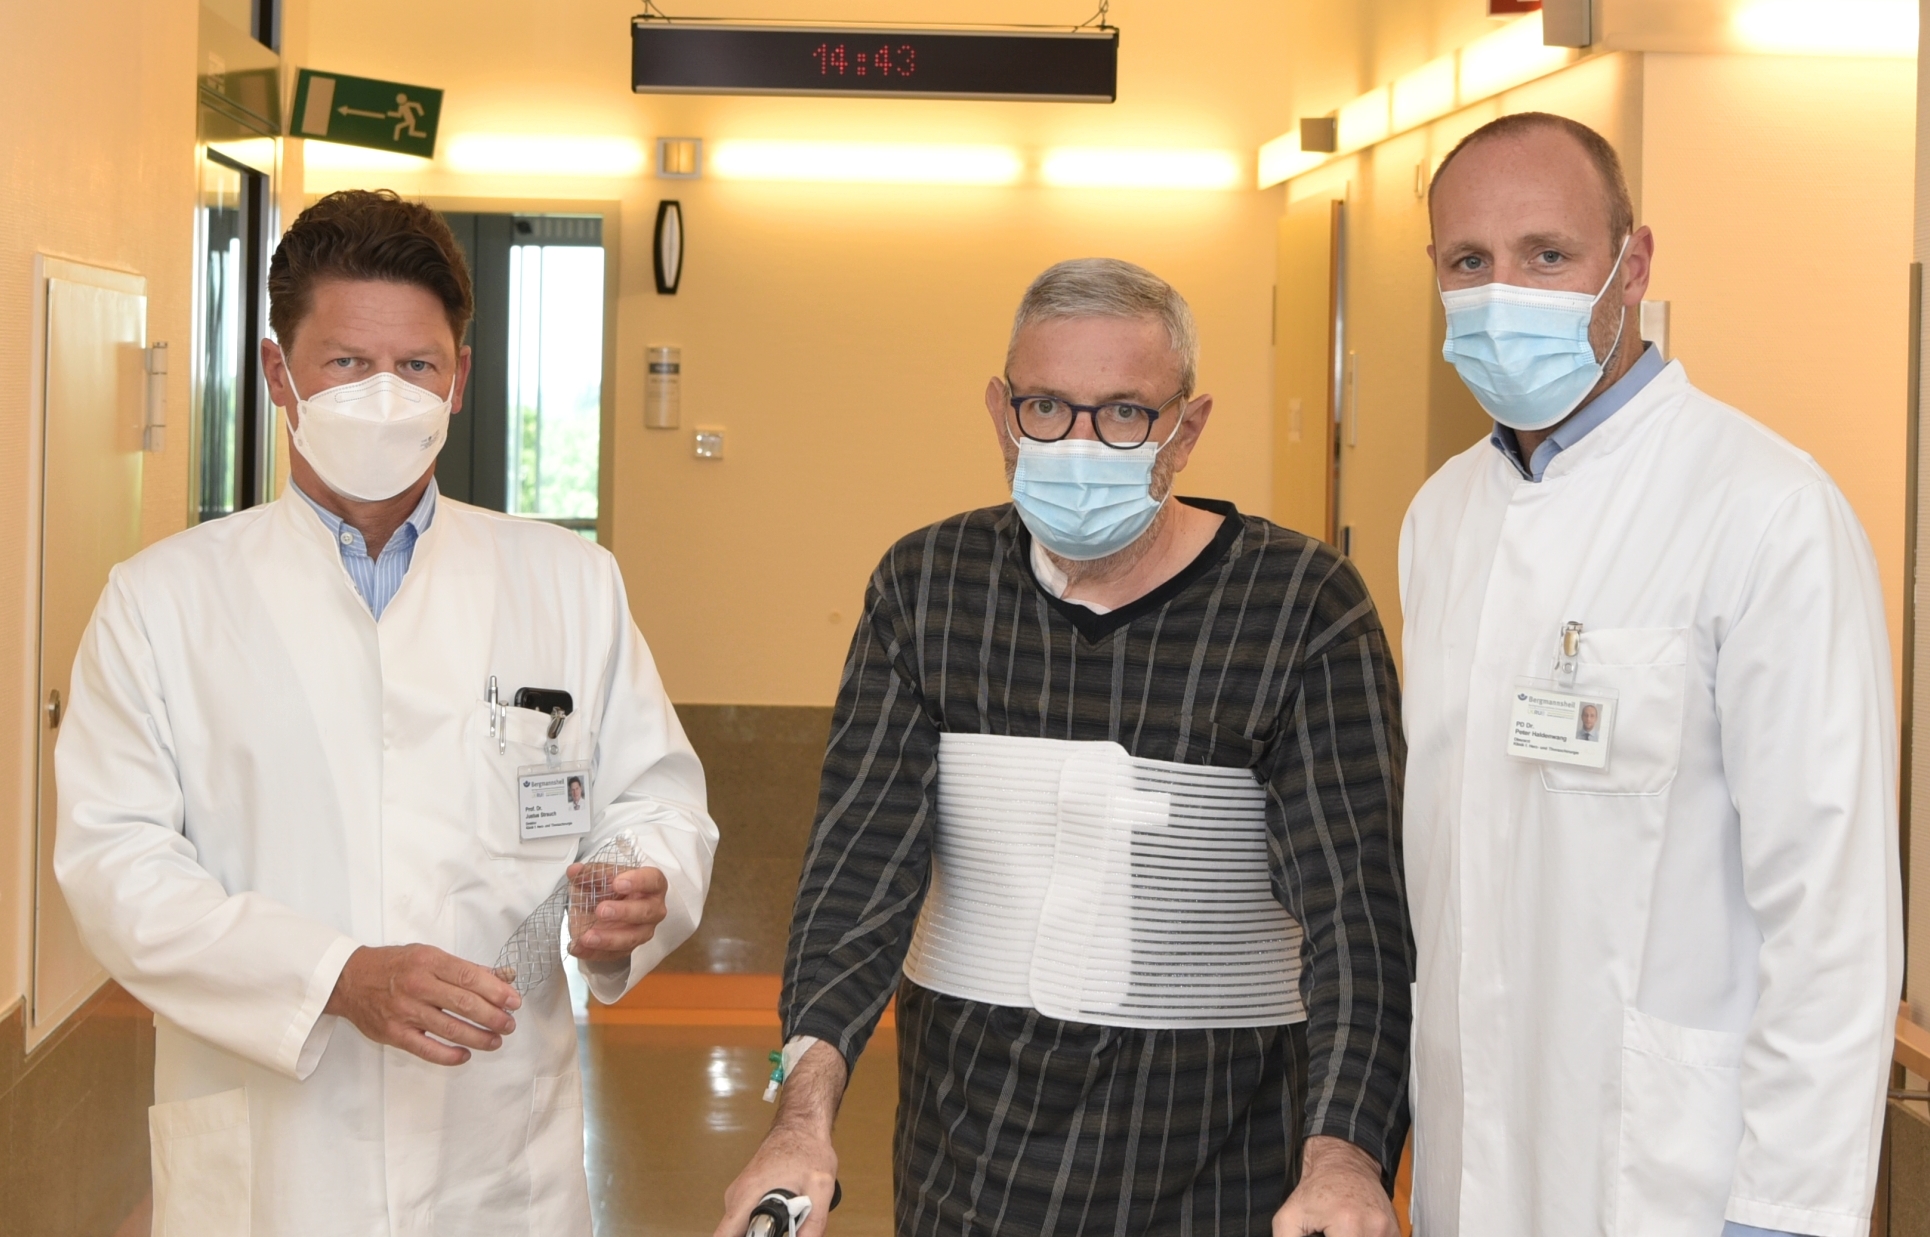 Bild: Prof. Dr. Justus Strauch, Patient und PD Dr. Peter-Lukas Haldenwang (von links) – Bildnachweis: BG Universitätsklinikum Bergmannsheil